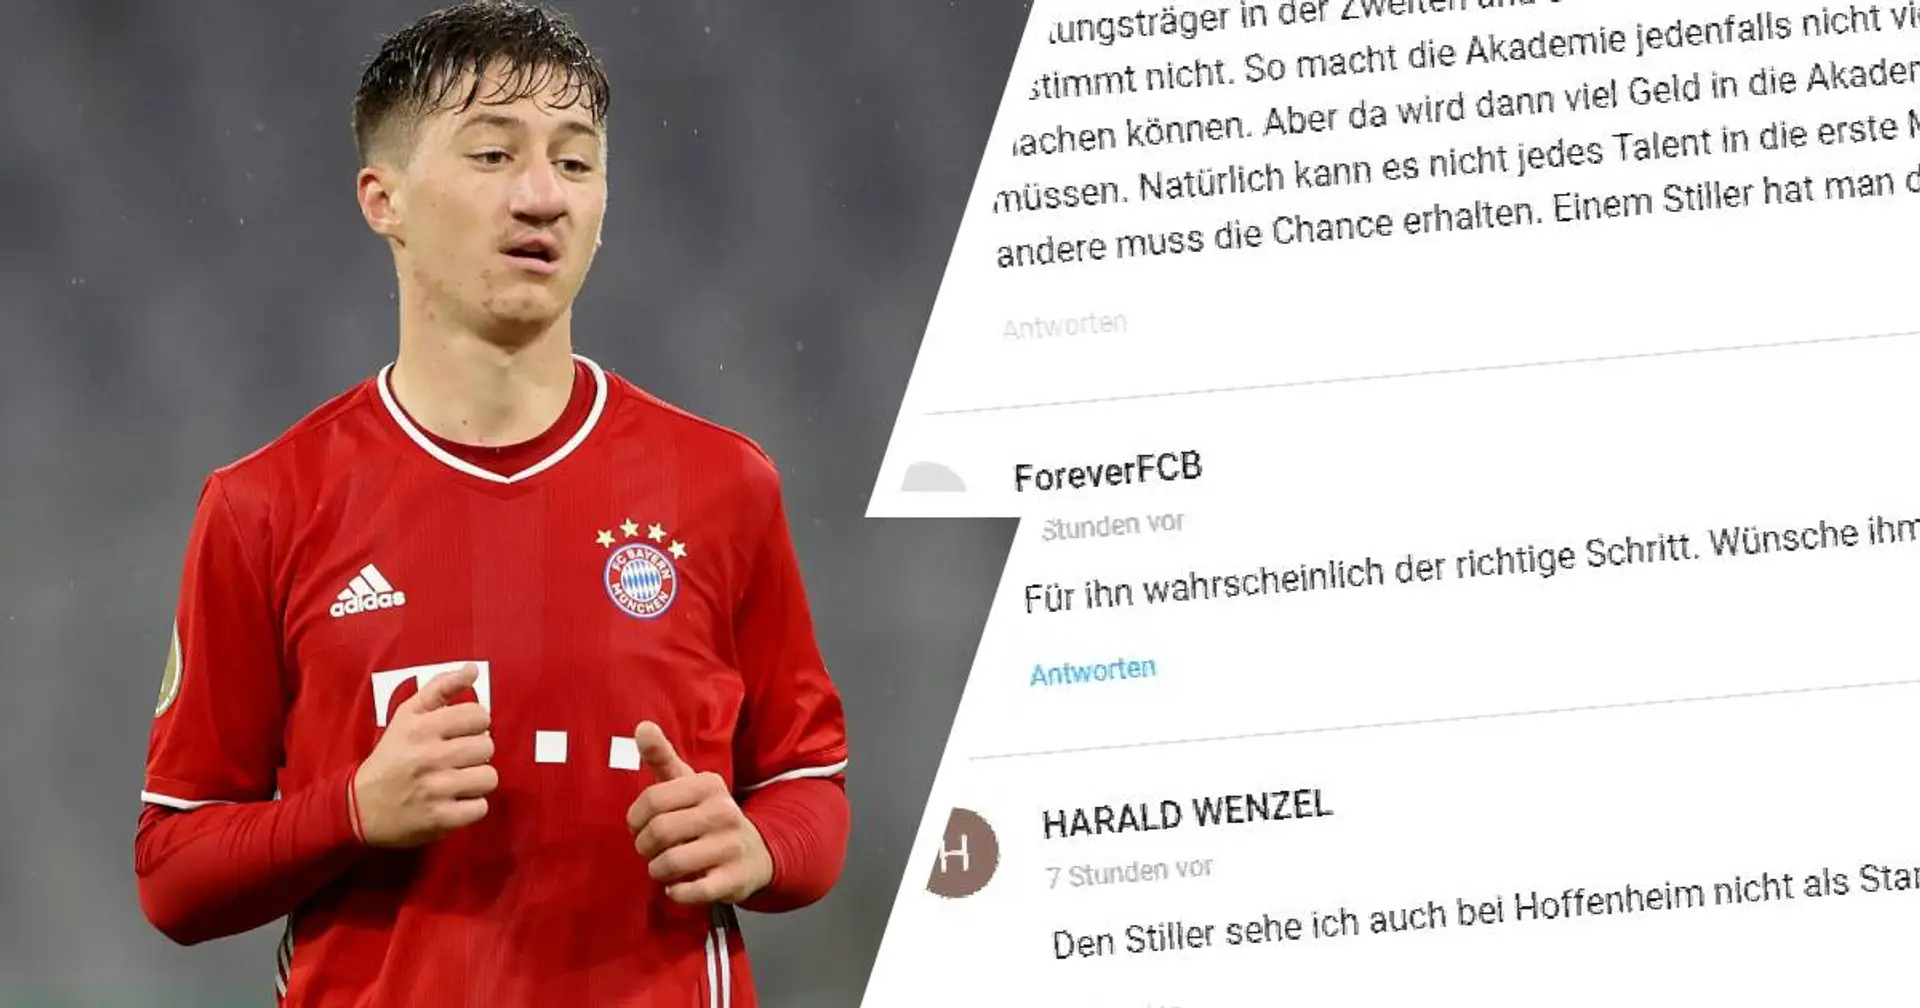 "Zu wenig Geduld mit dem Nachwuchs?": Bayern-Fans diskutieren über Stillers Abschied im Sommer